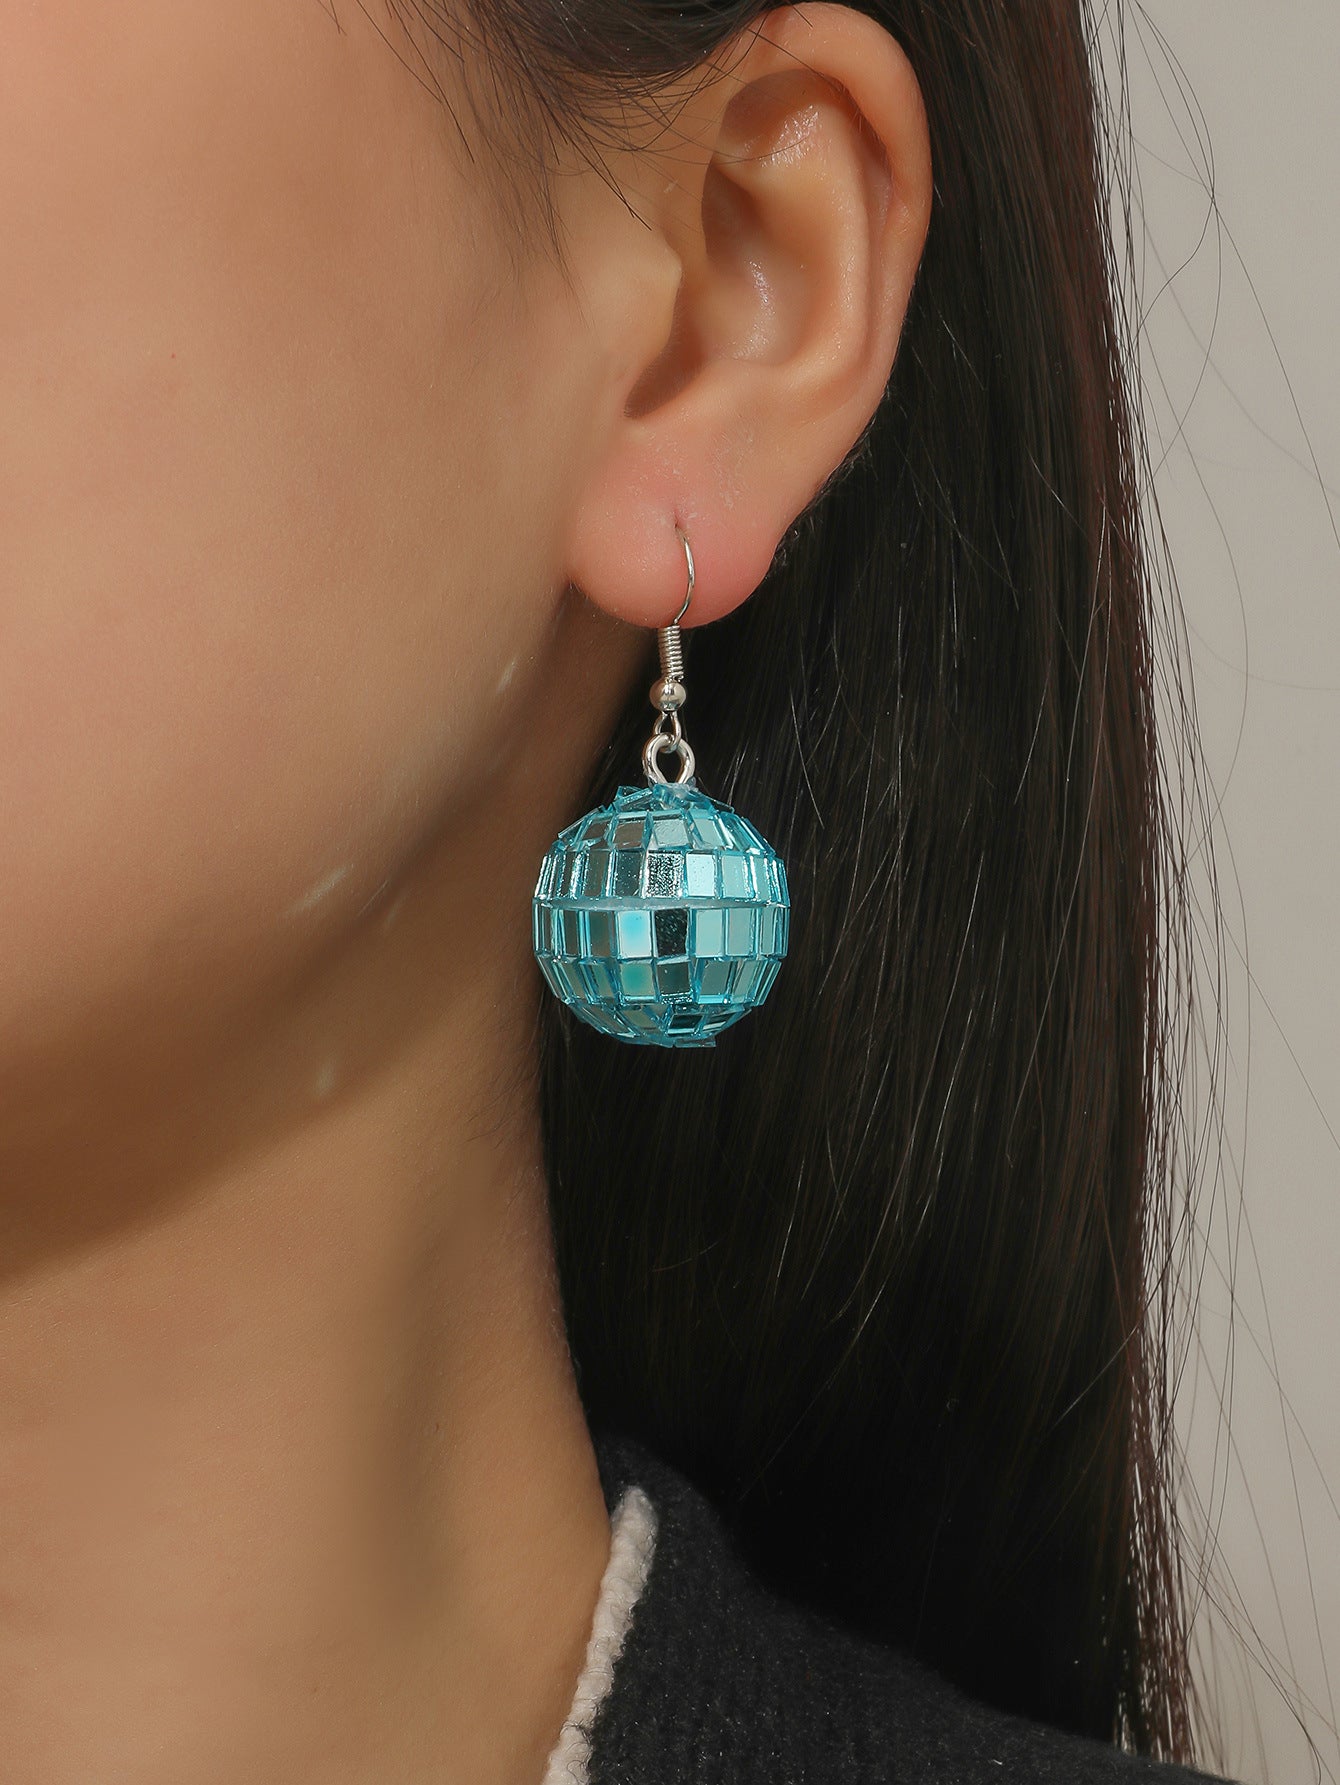 blue mirror ball earrings, taylor swift style